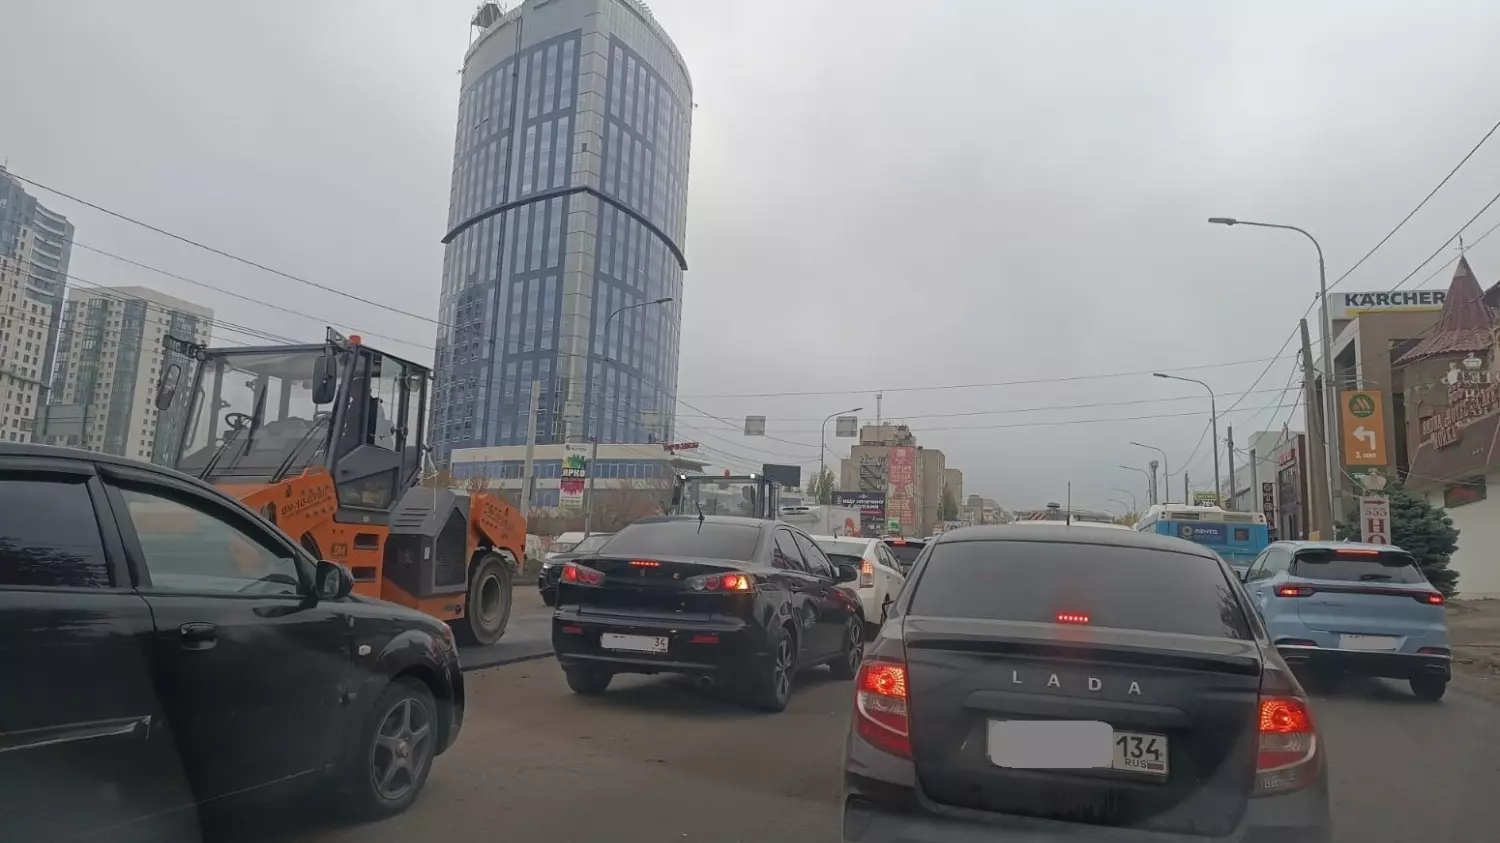 Укладка асфальта в разгар рабочего дня добавила массу неудобств волгоградским автомобилистам